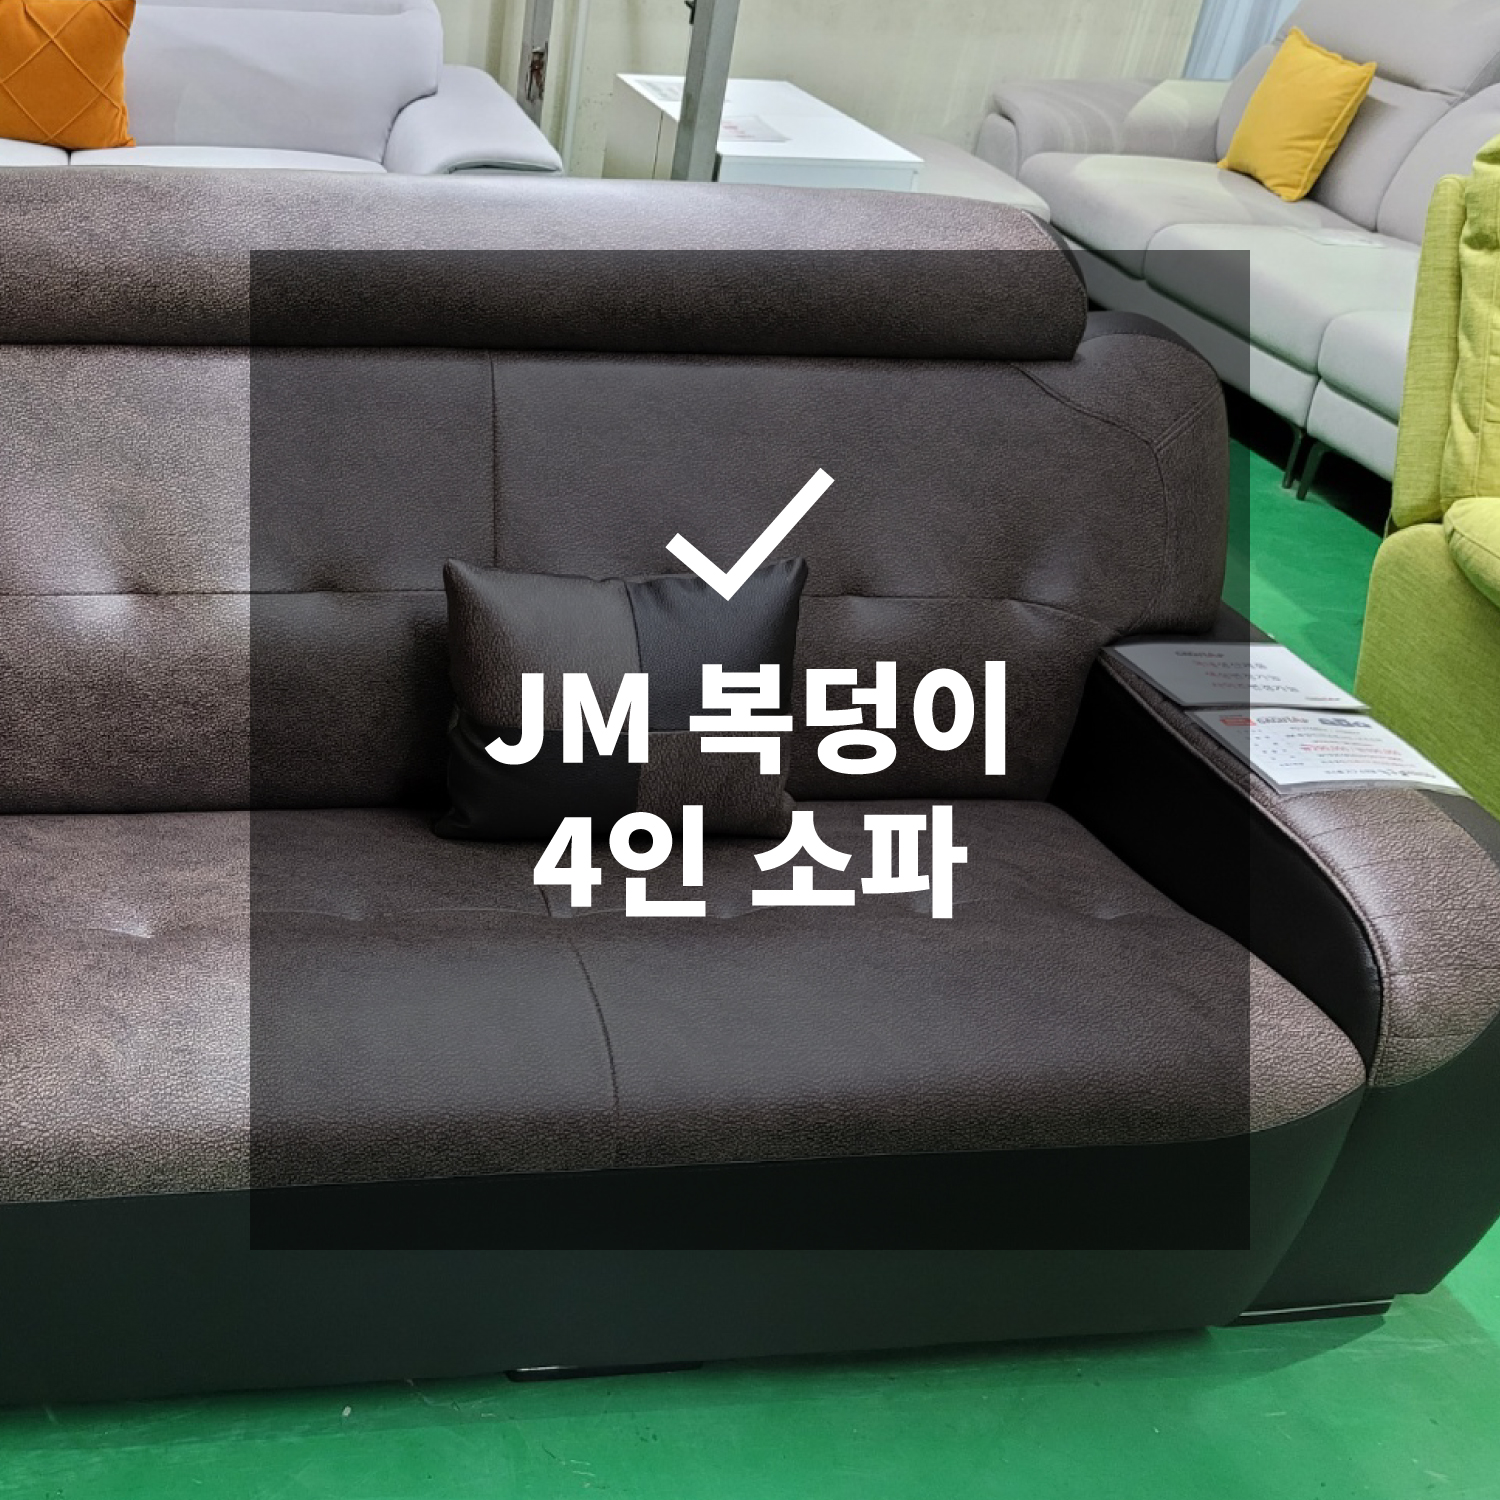 JM 복덩이 4인 소파 + 보조 소파 (국내생산)